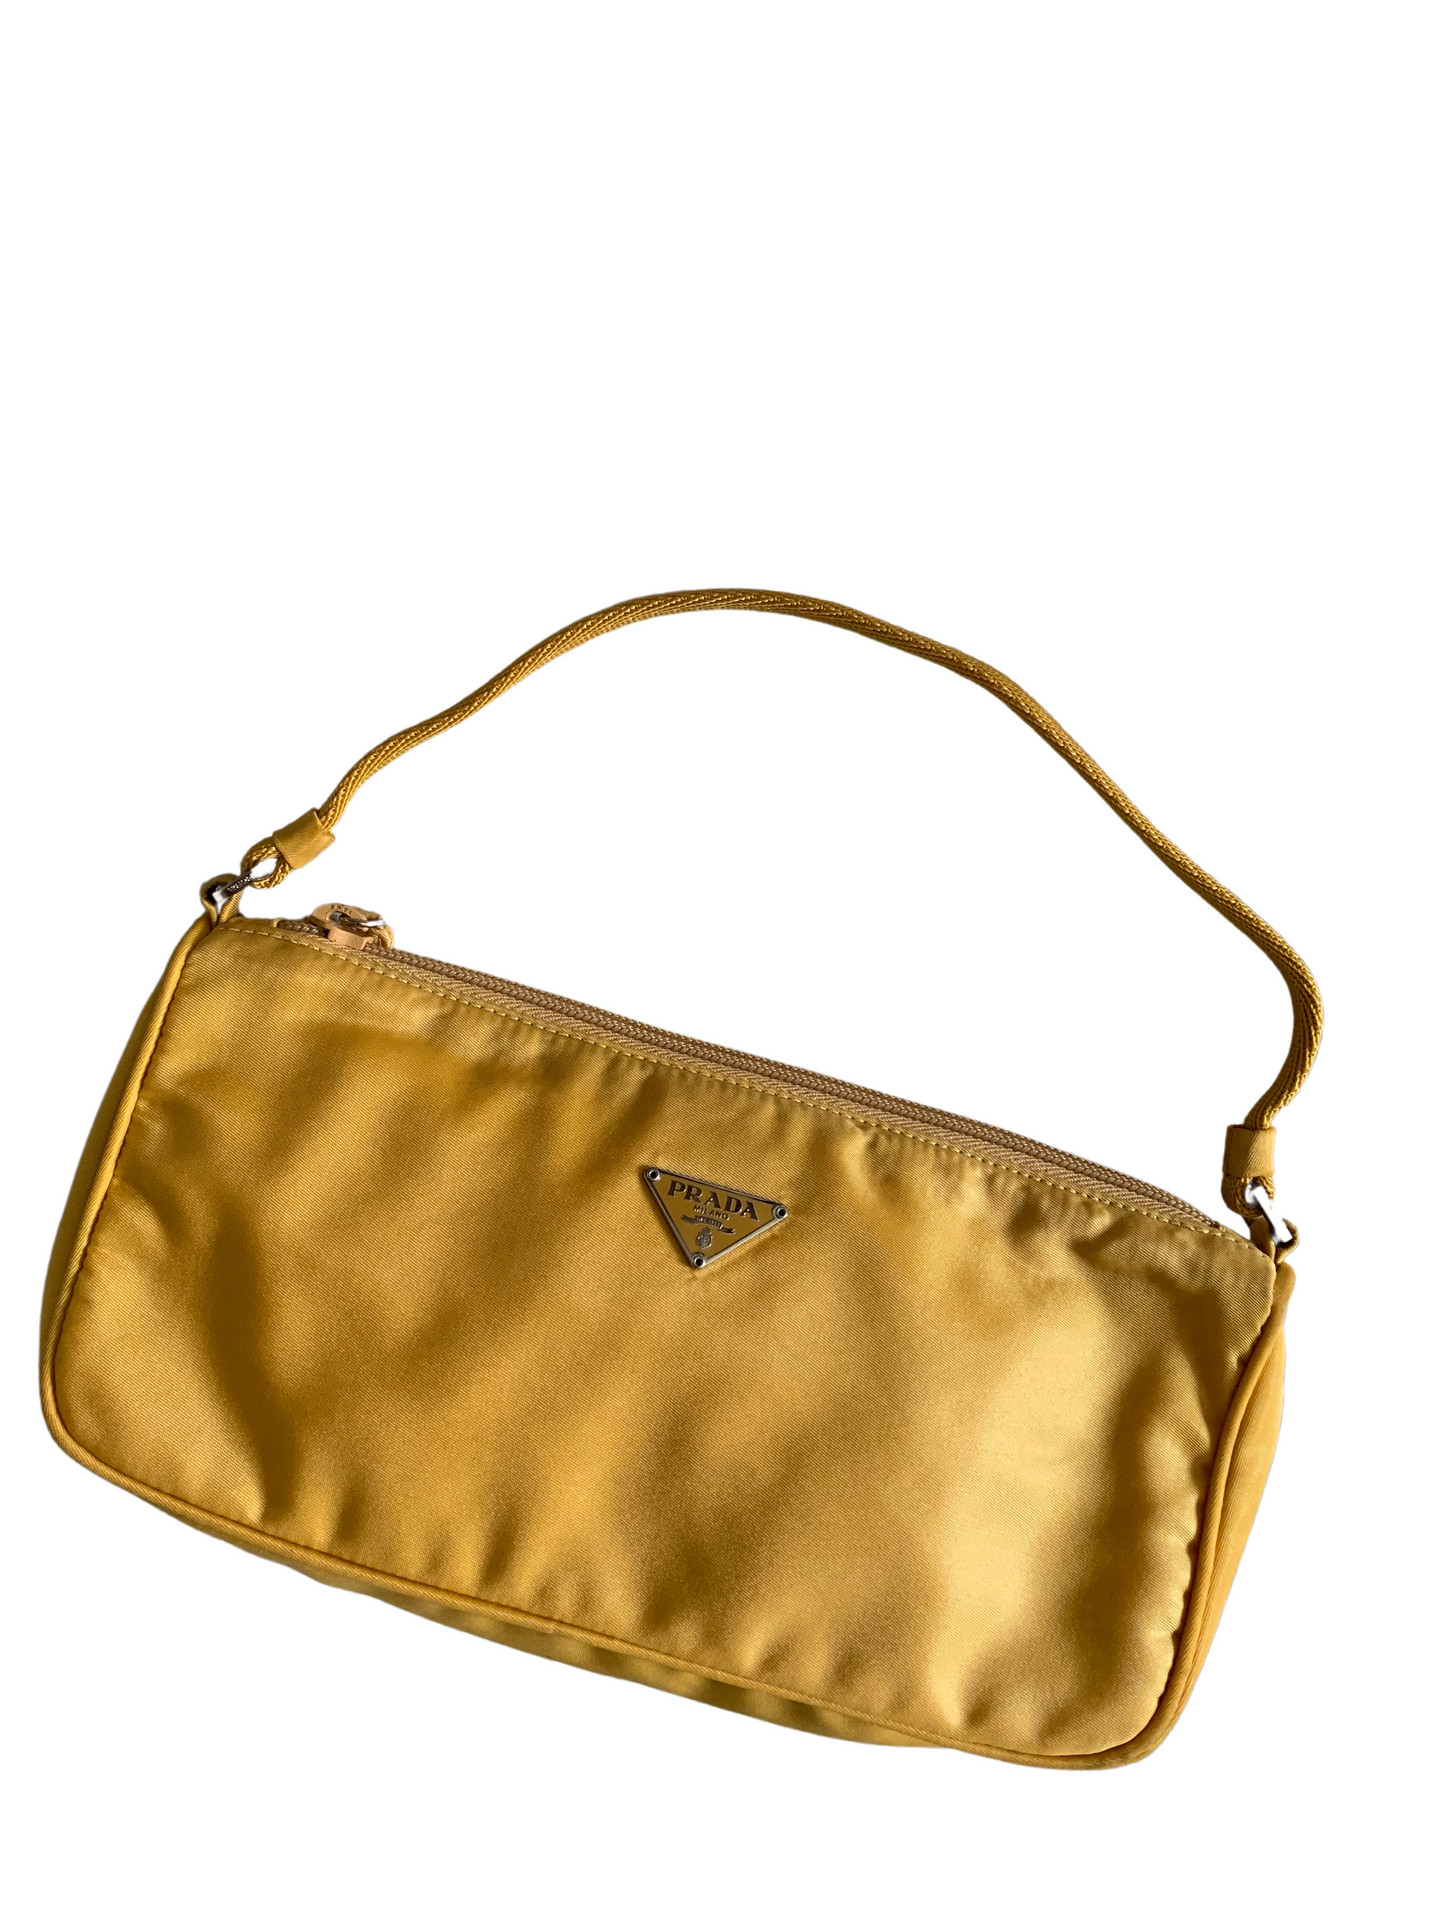 Prada Yellow Nylon Handbag